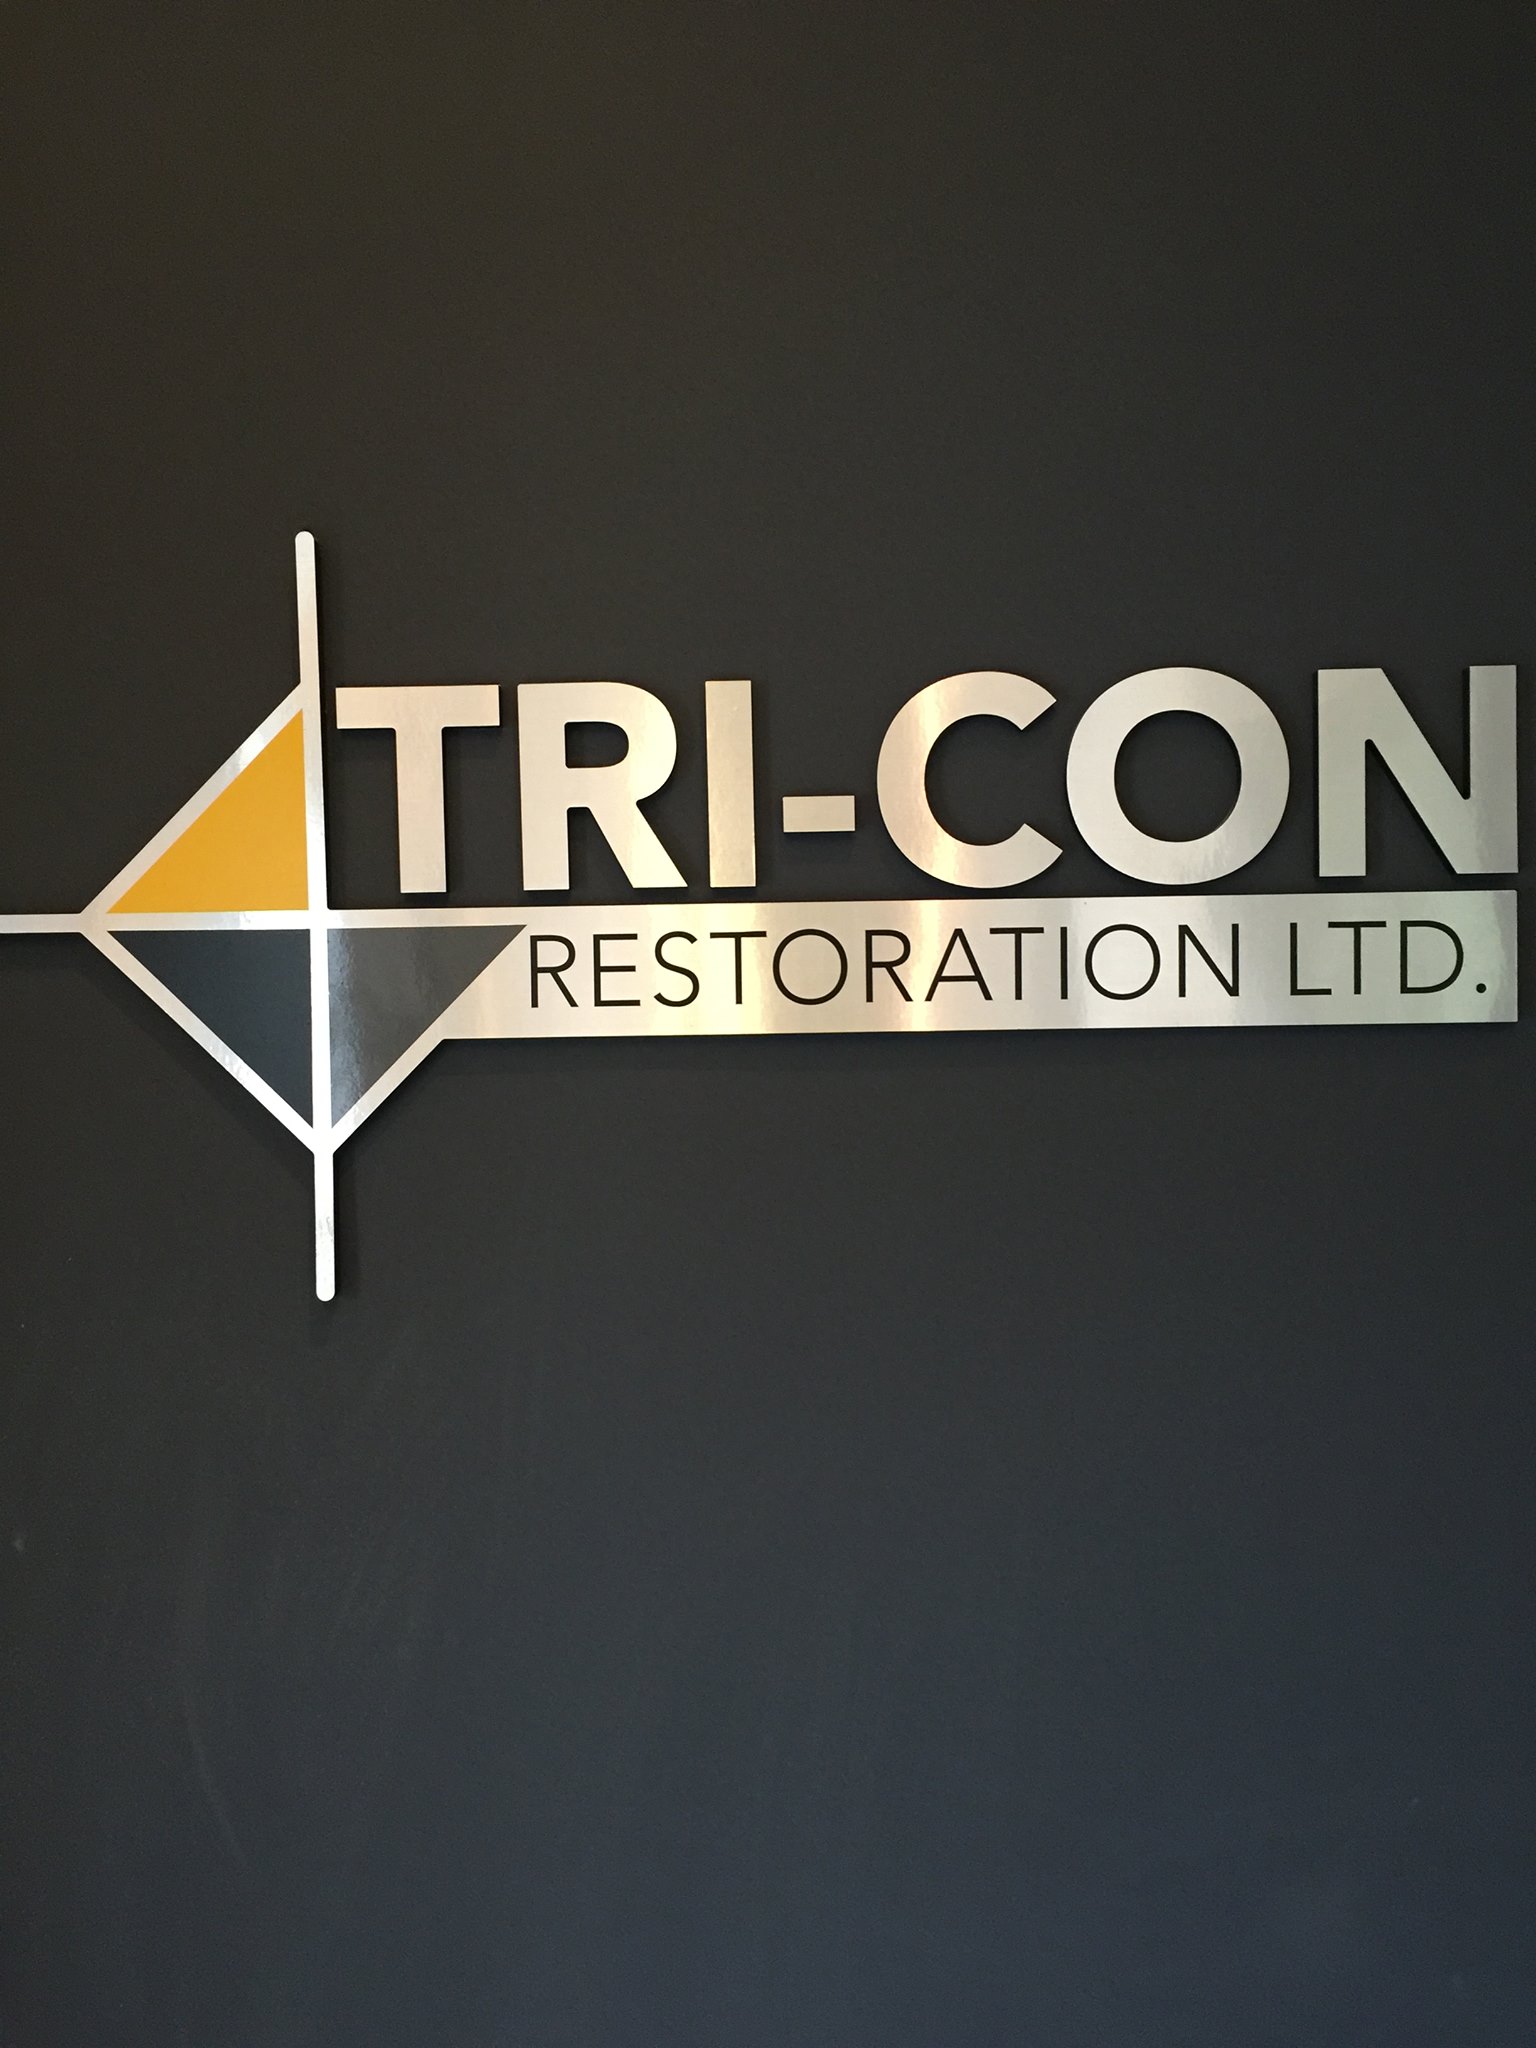 Tri-Con-restoration